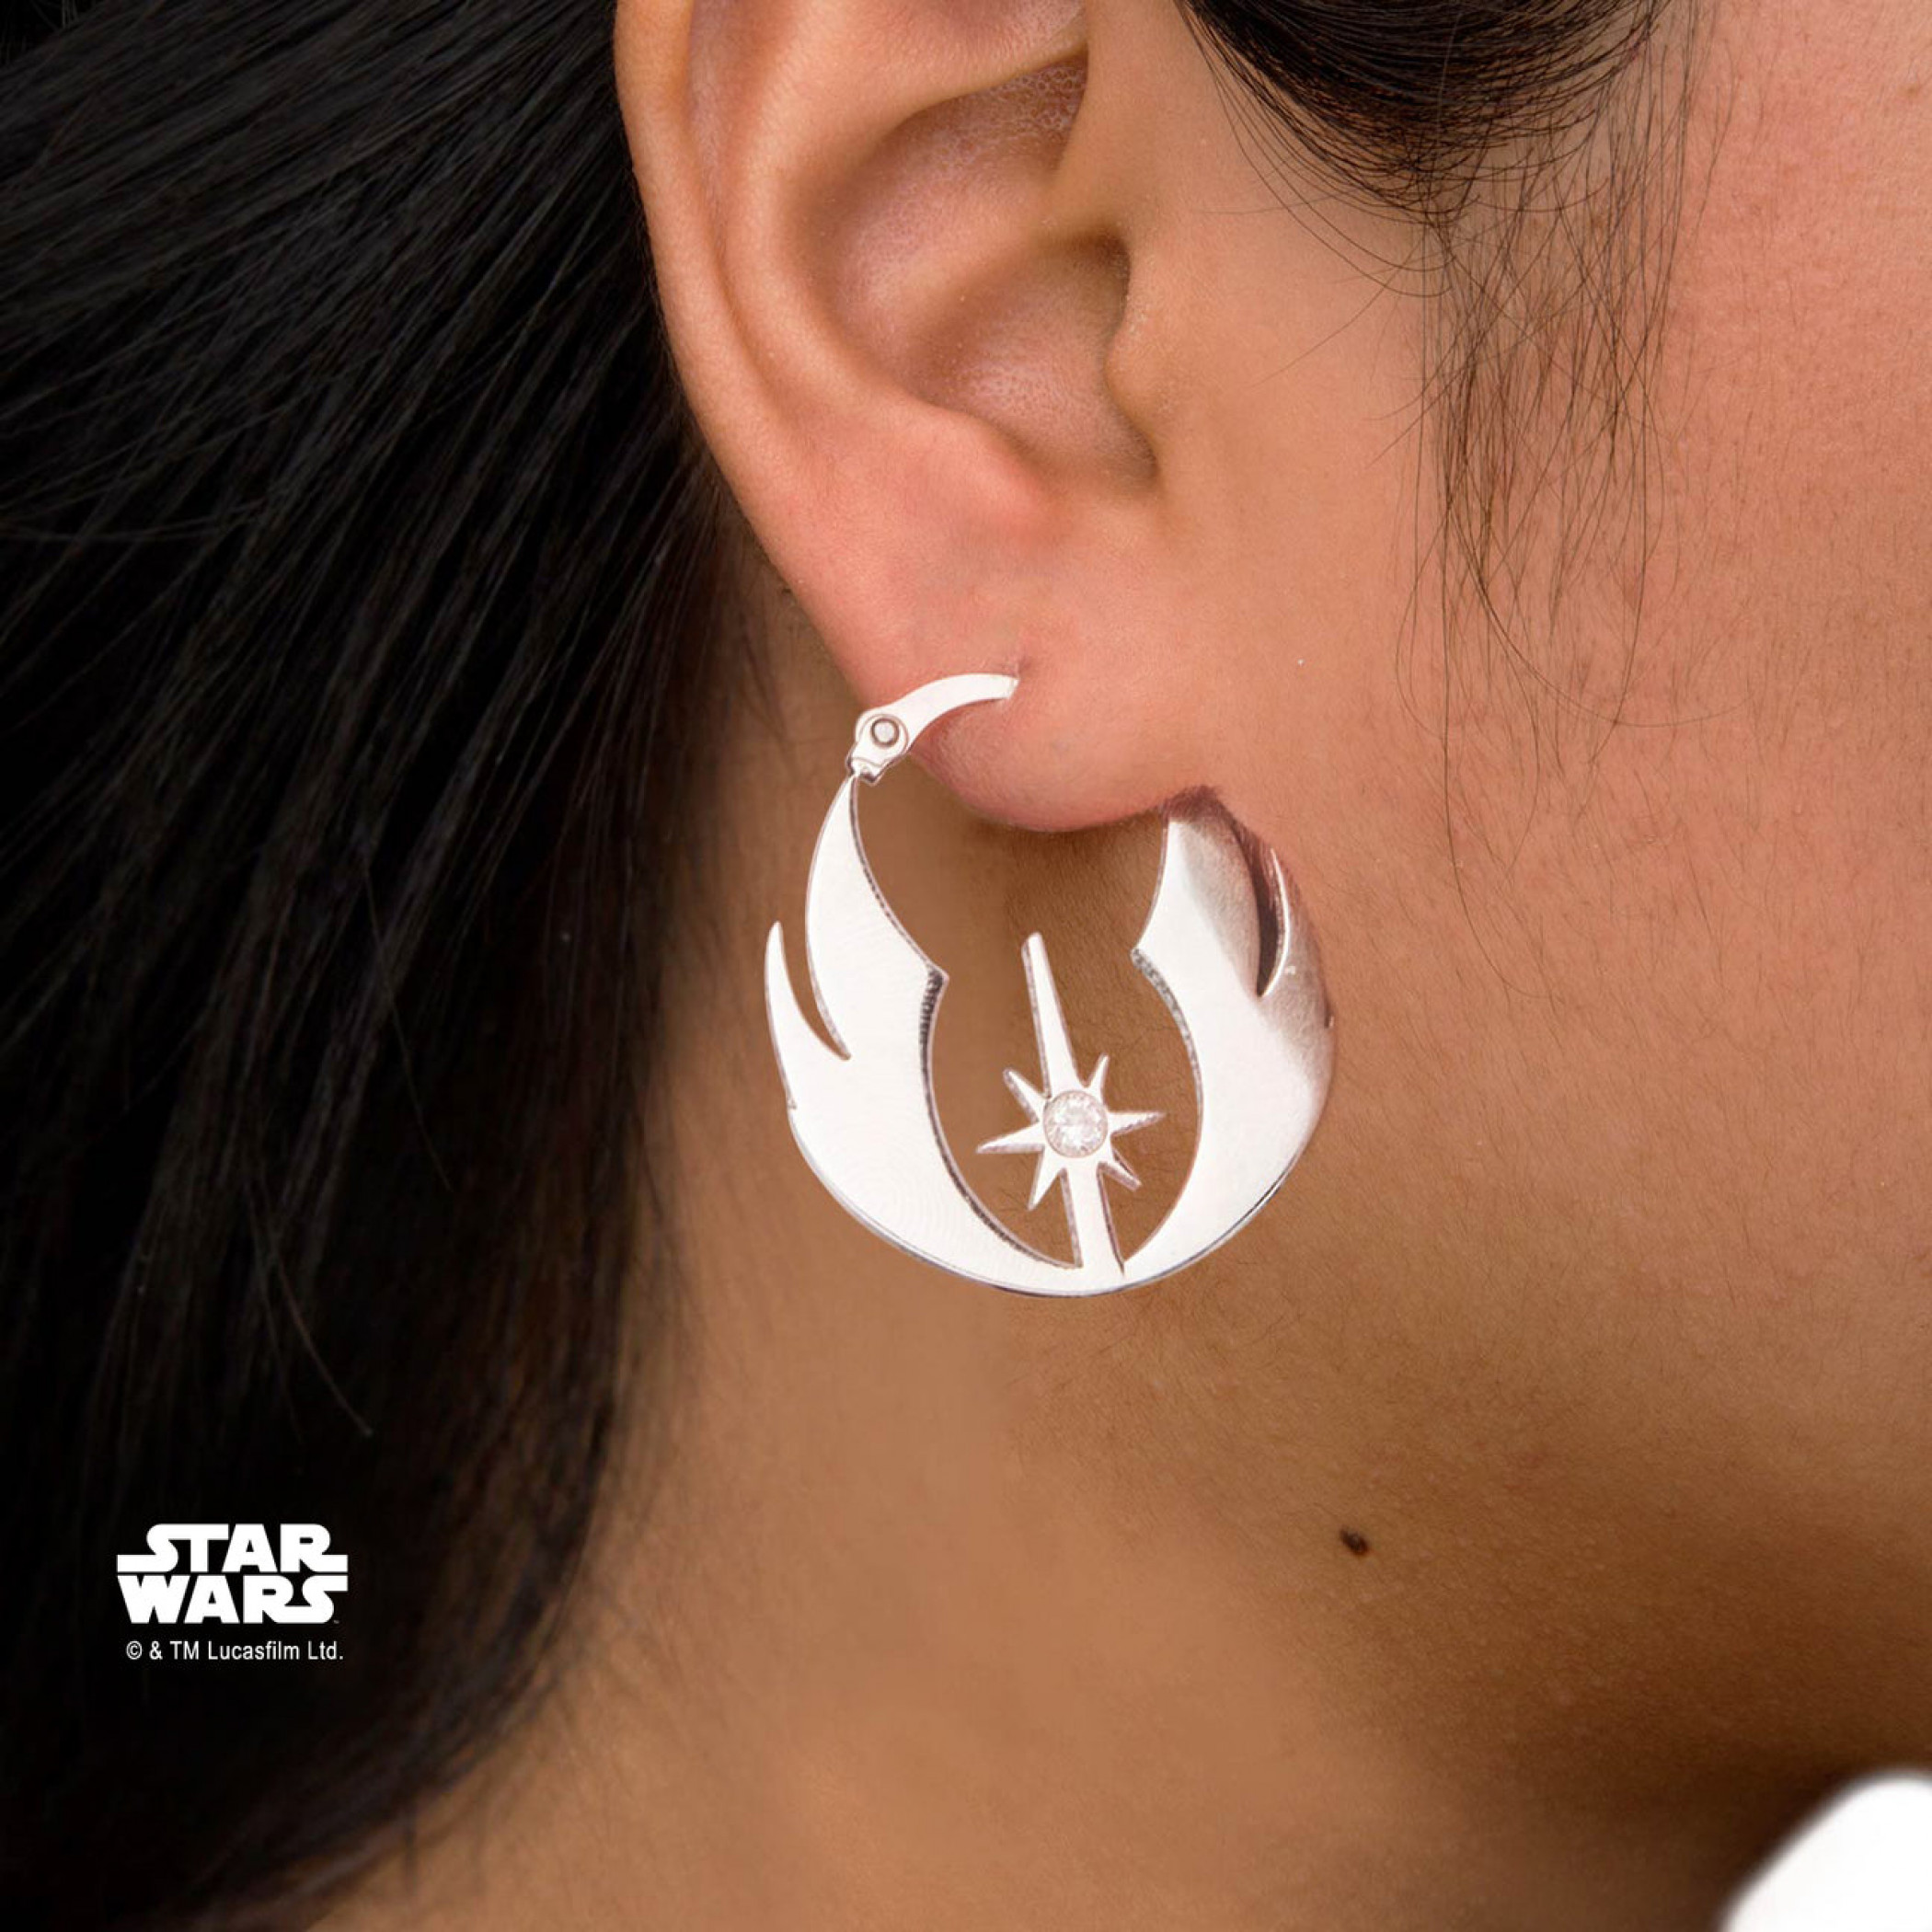 Star Wars Jedi Order Hoop Stainless Steel Earrings